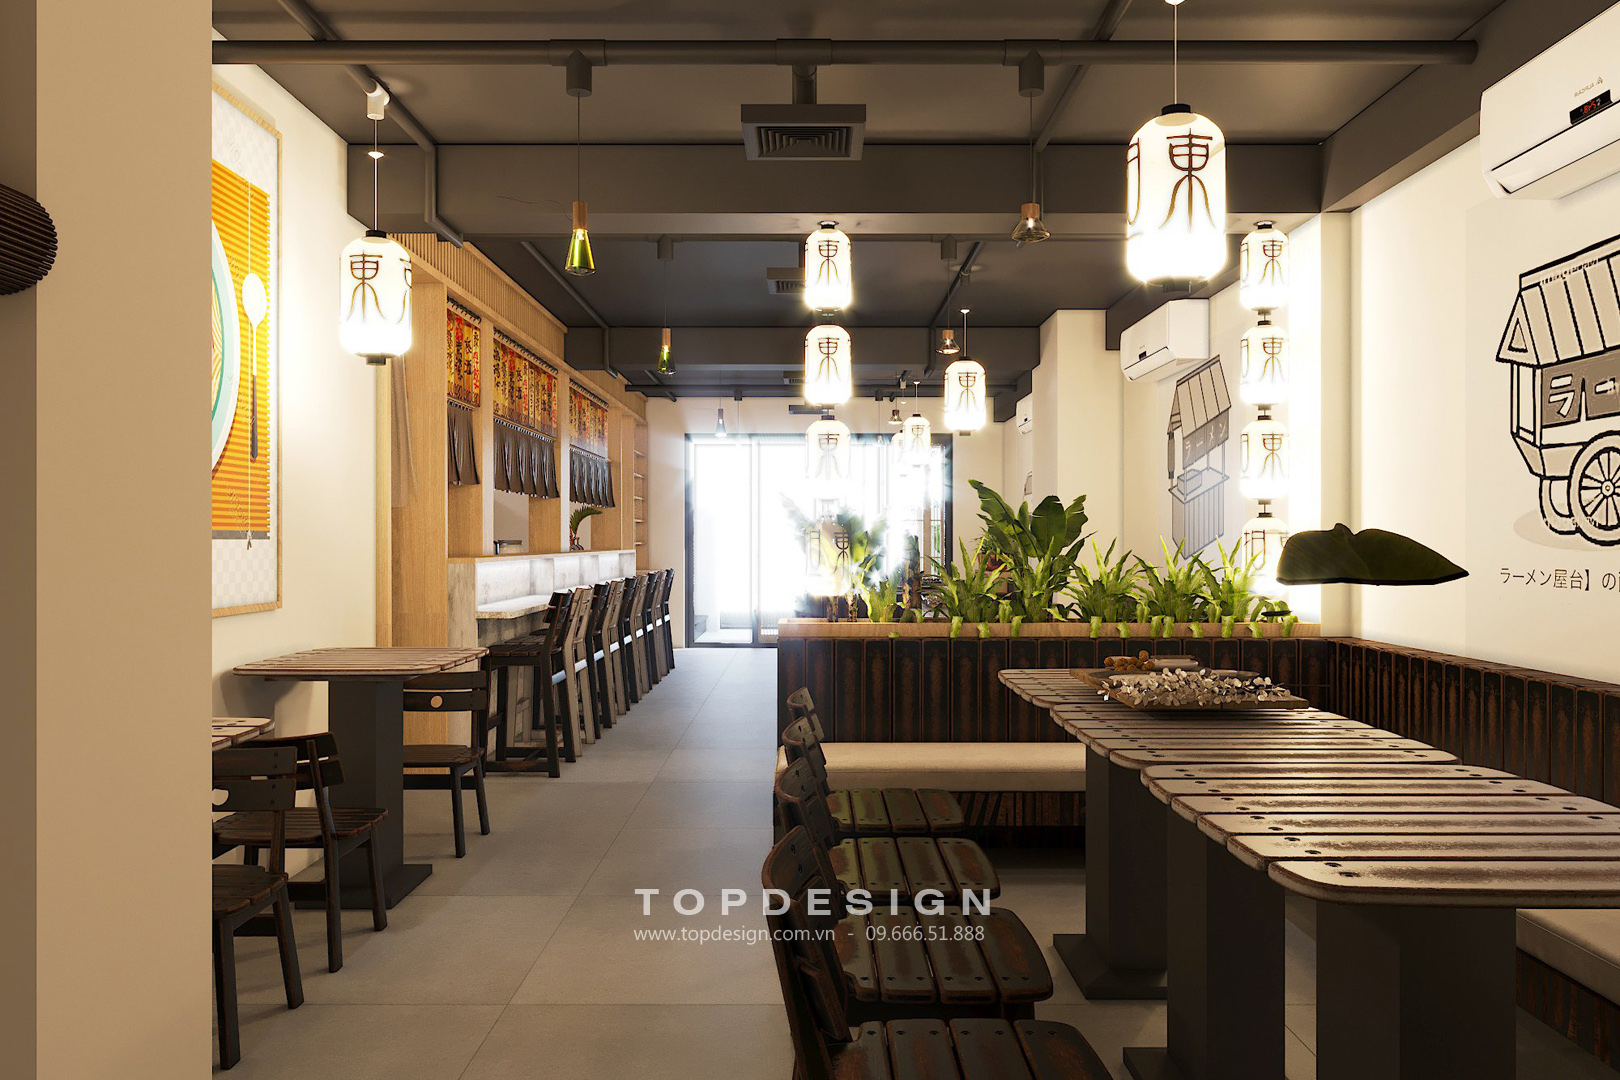 TOPDESIGN_Nhà hàng Nhật Bản_Mỳ Ramen_08